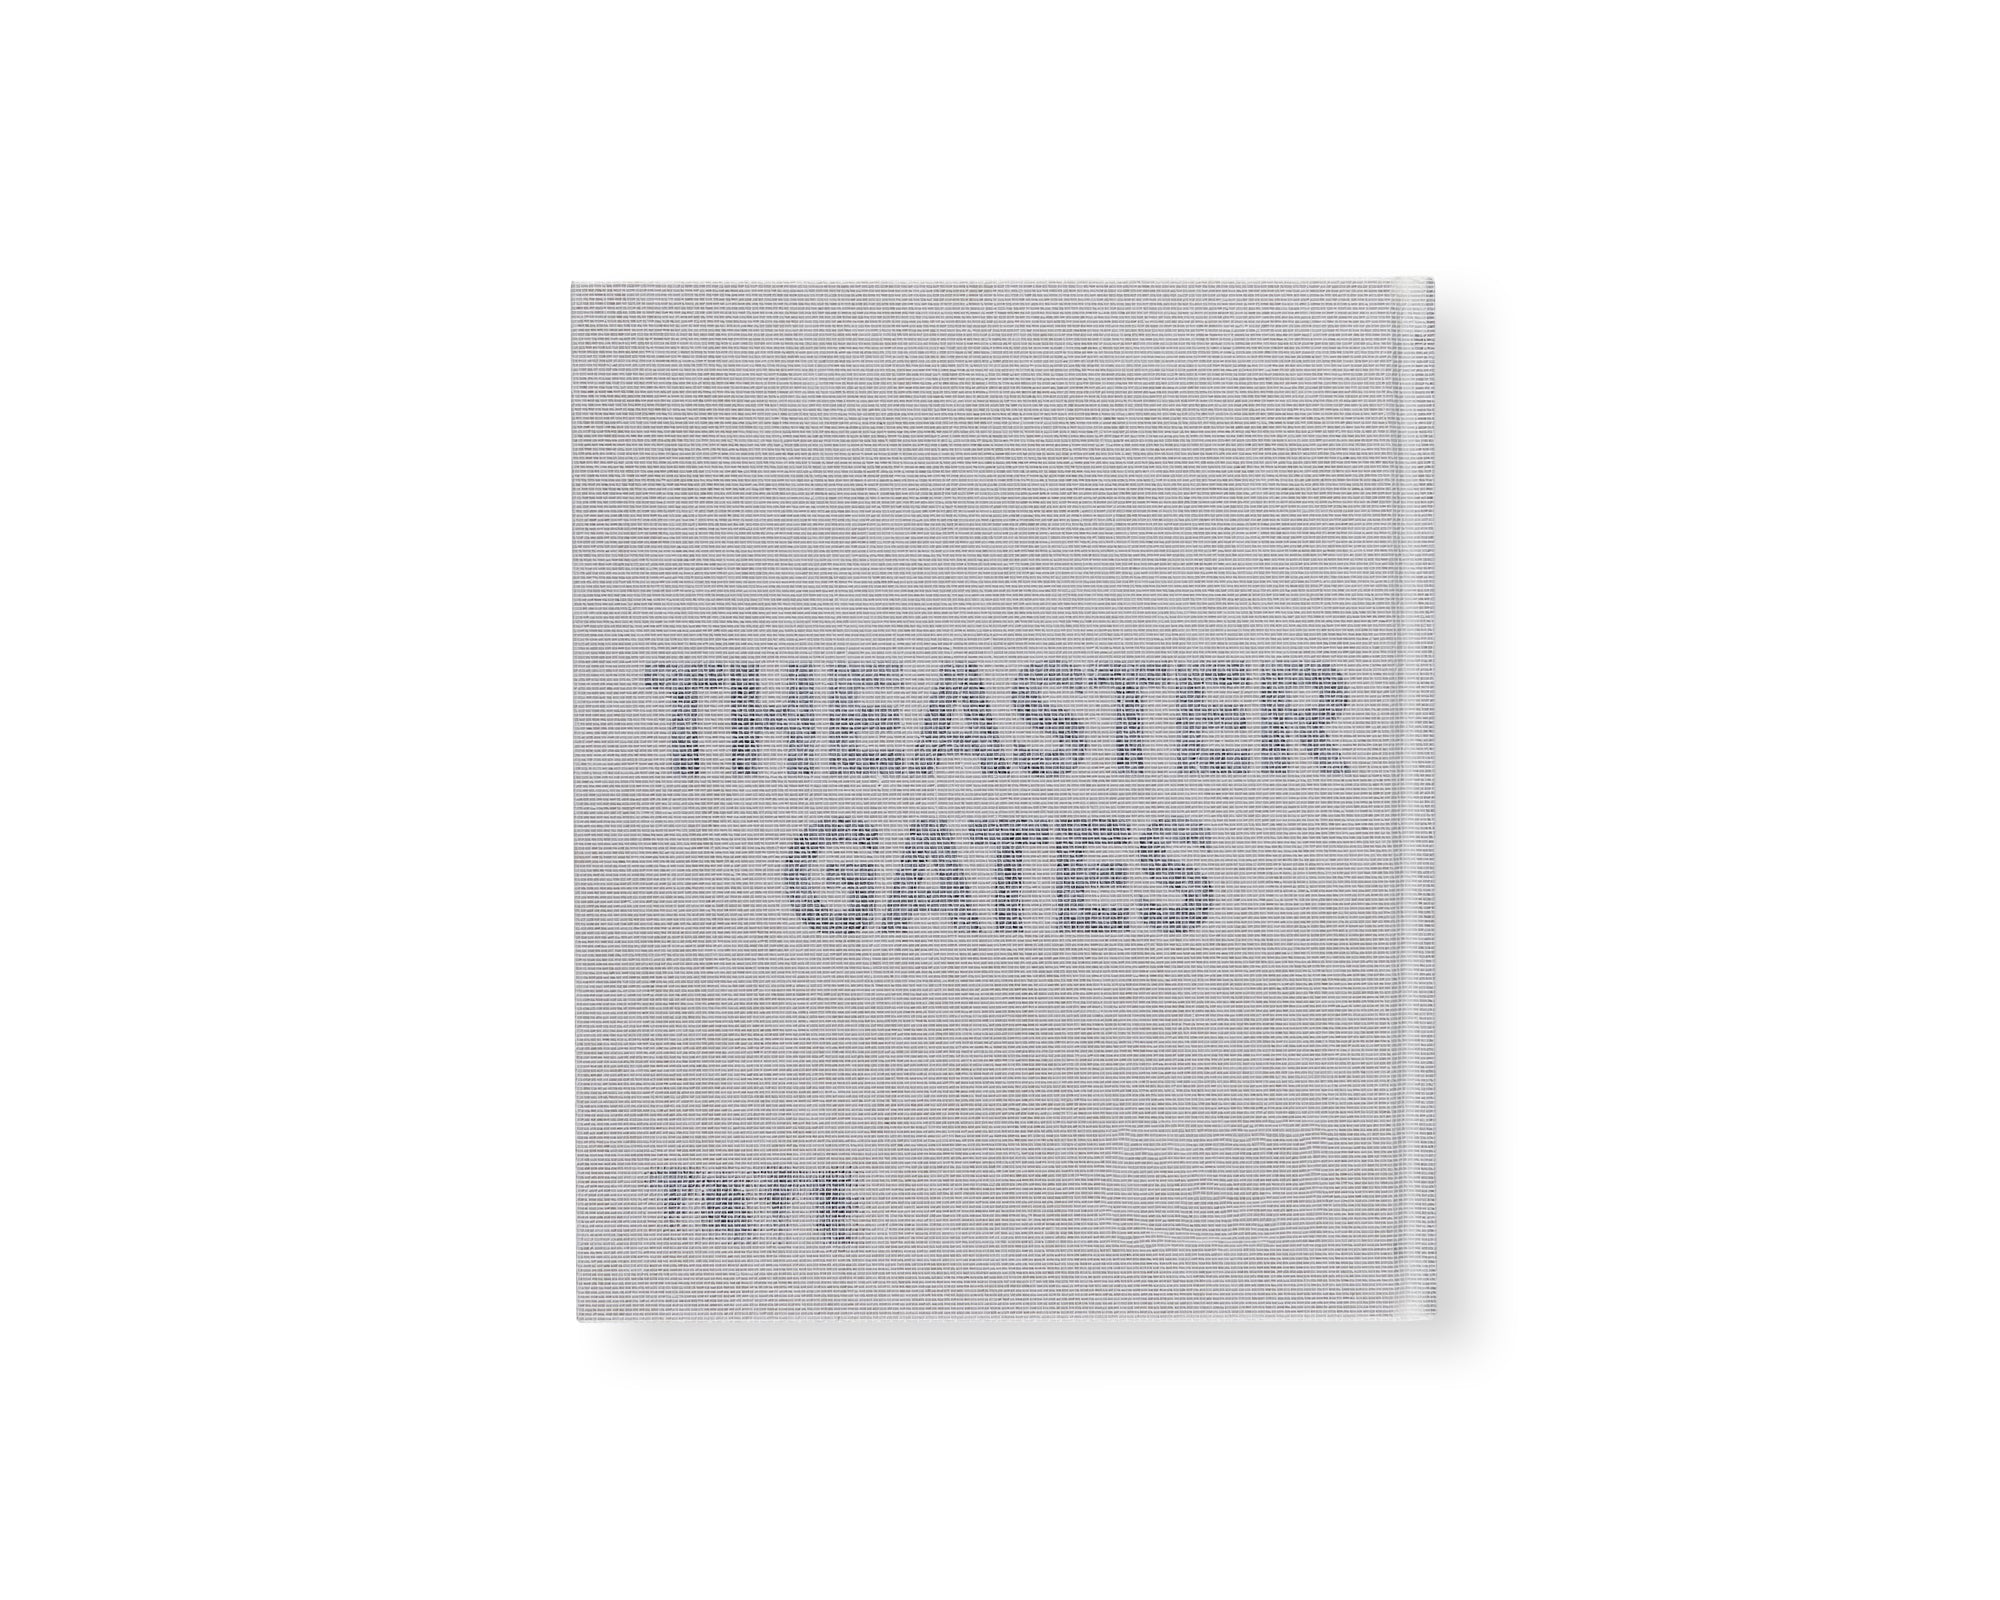 AMALGAM by Theaster Gates